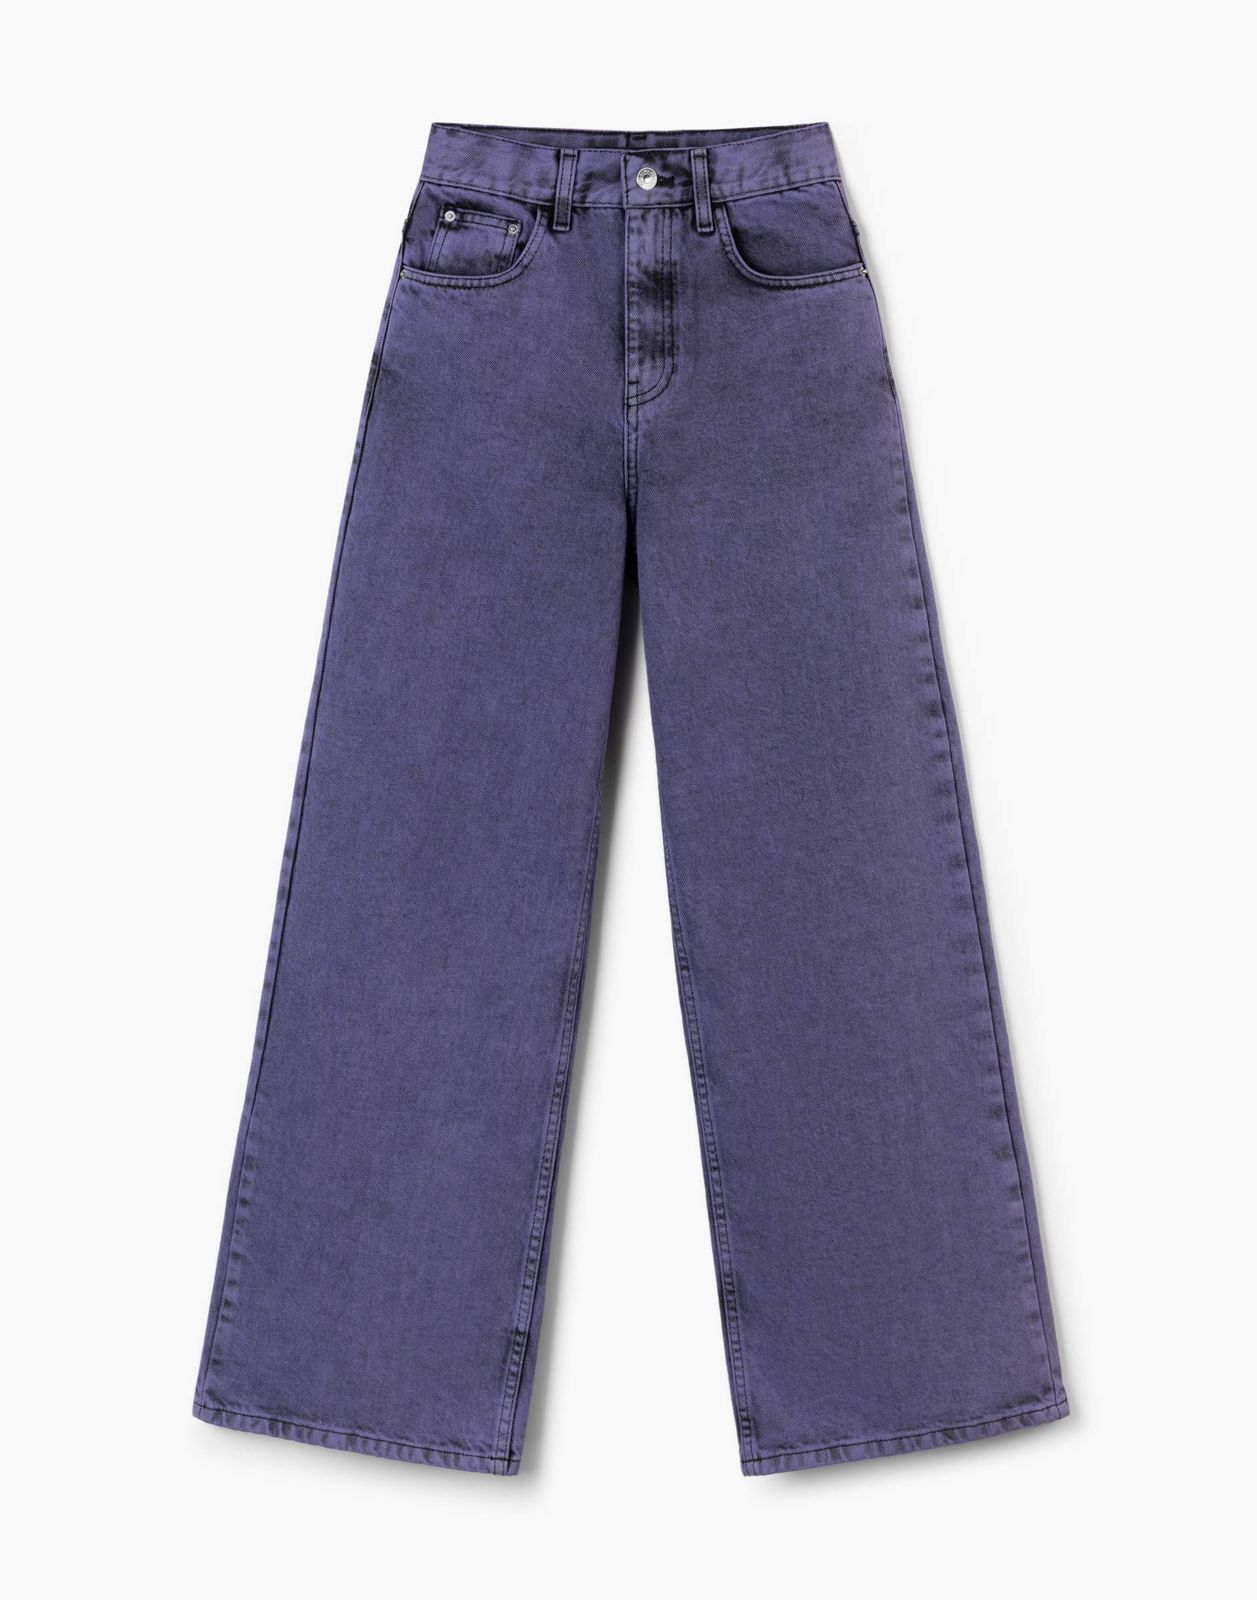 Джинсы детские Gloria Jeans GJN031150, черный/фиолетовый, 128 джинсы gloria jeans gjn031147 фиолетовый 8 10л 140